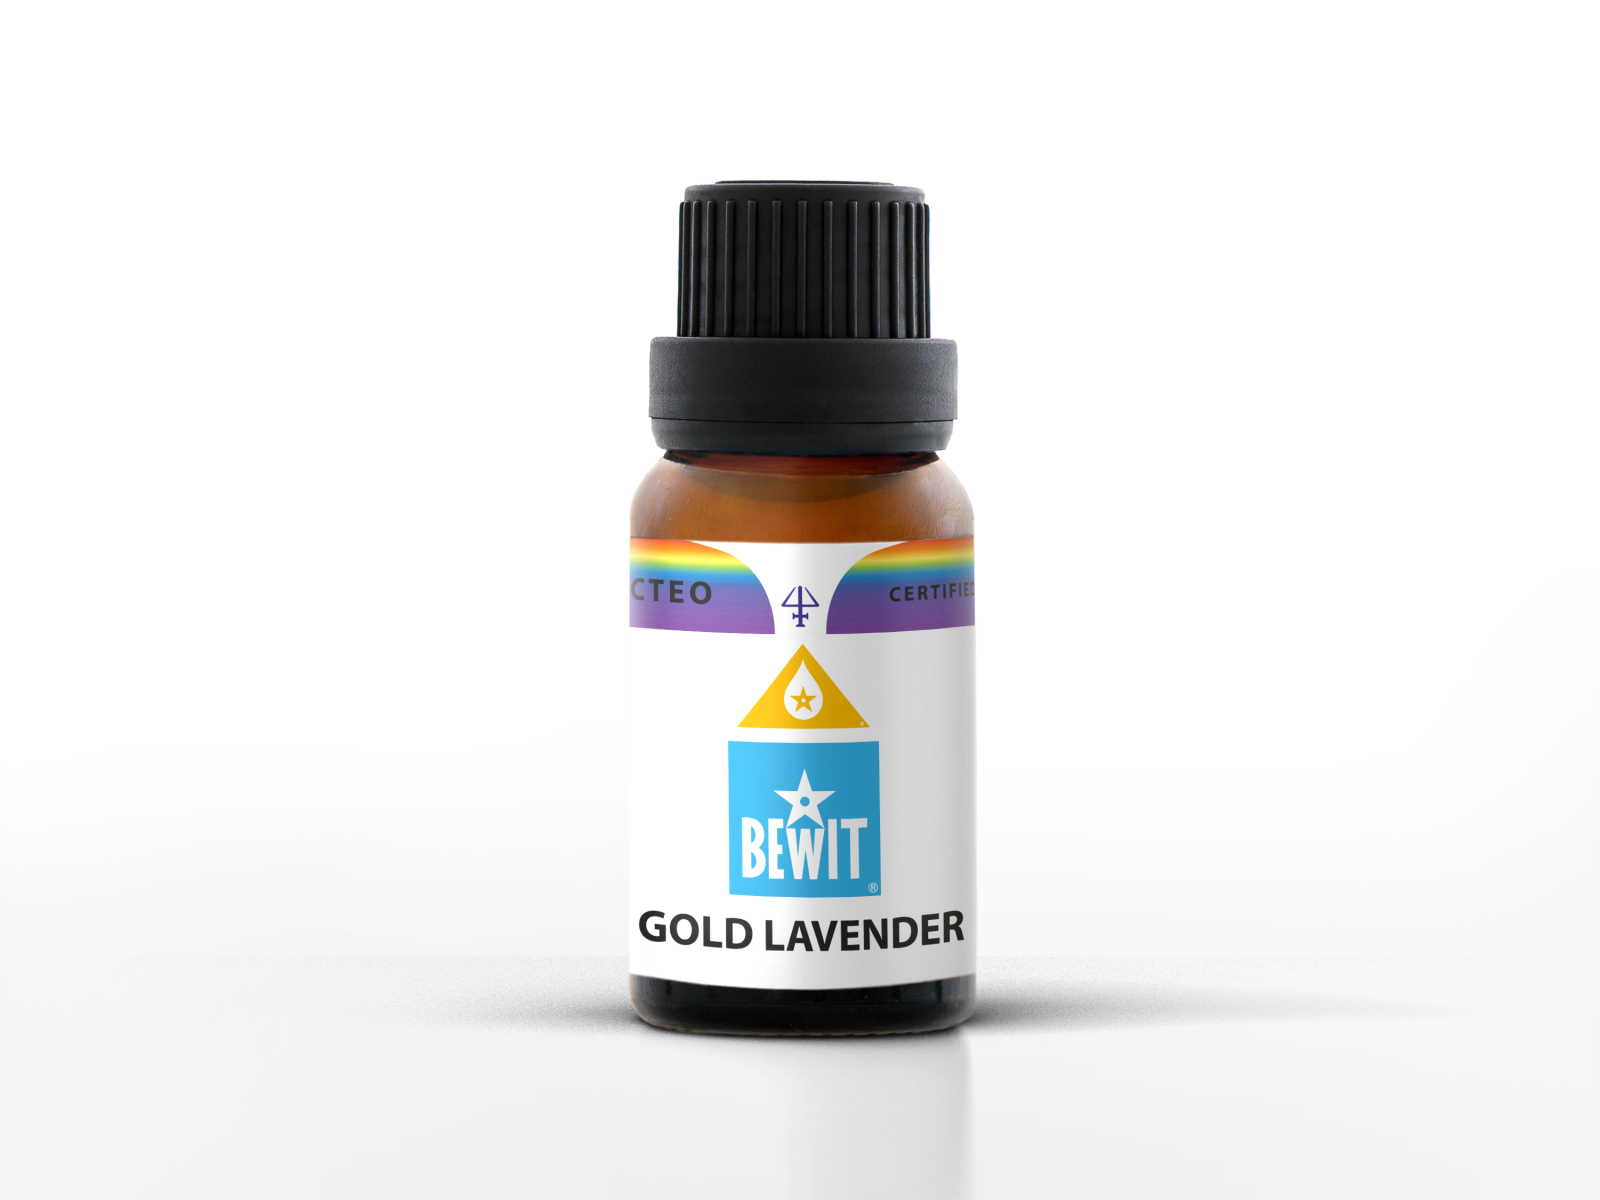 BEWIT GOLD LAVENDER - Blend of essential oils